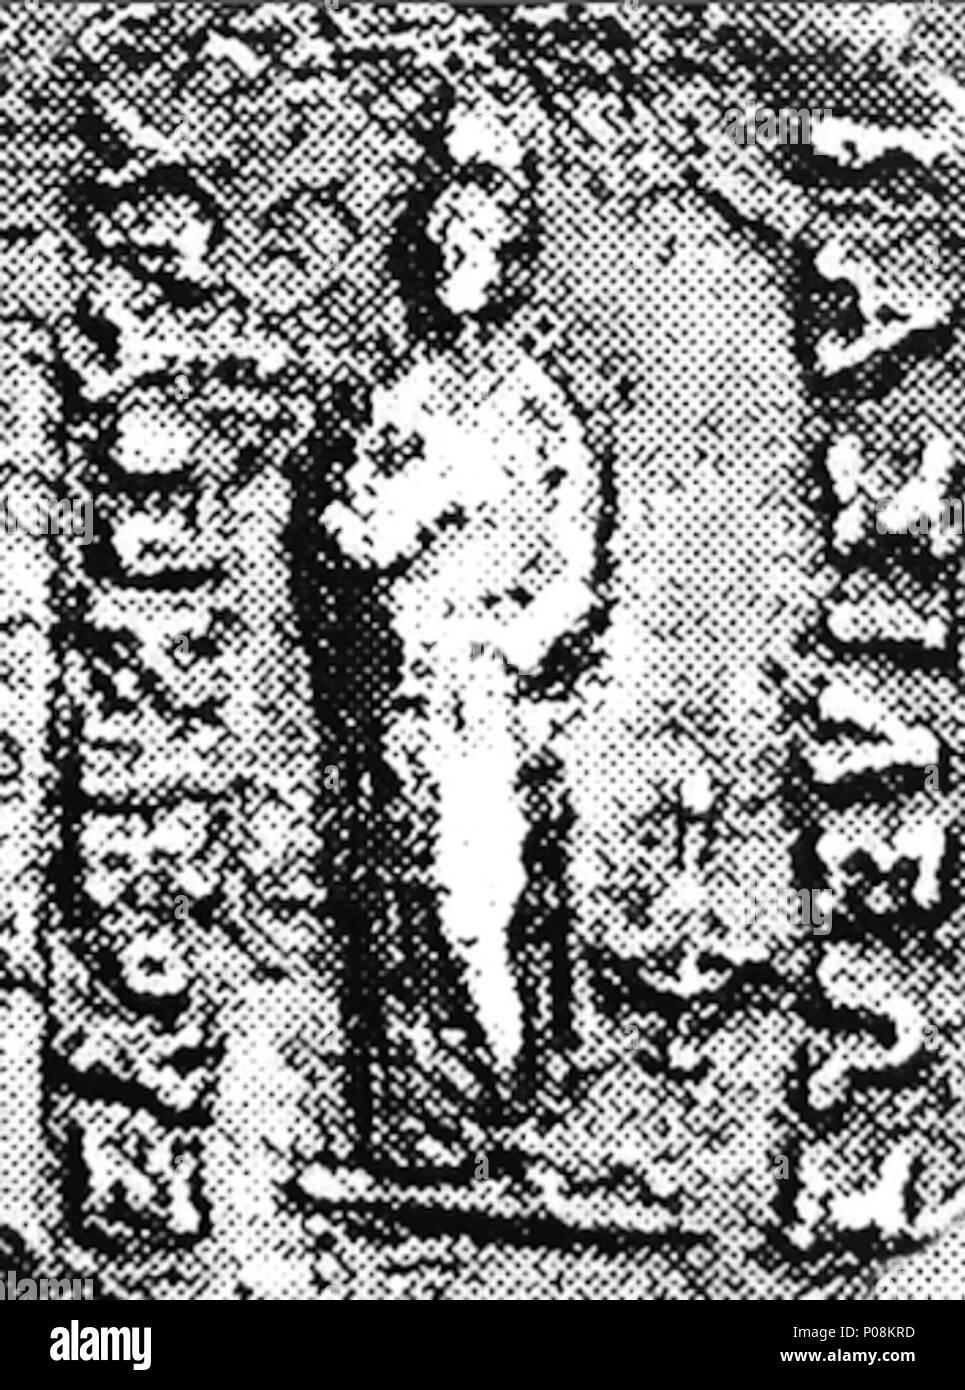 . Inglese: la porzione centrale di una moneta di Agathokles di Battriana (Serie 8). Il comportamento è simile al Buddha di Bimaran scrigno. . 1 gennaio 1991. Osmund Bopearachchi 272 Agathokles Serie 8 porzione di monete Foto Stock